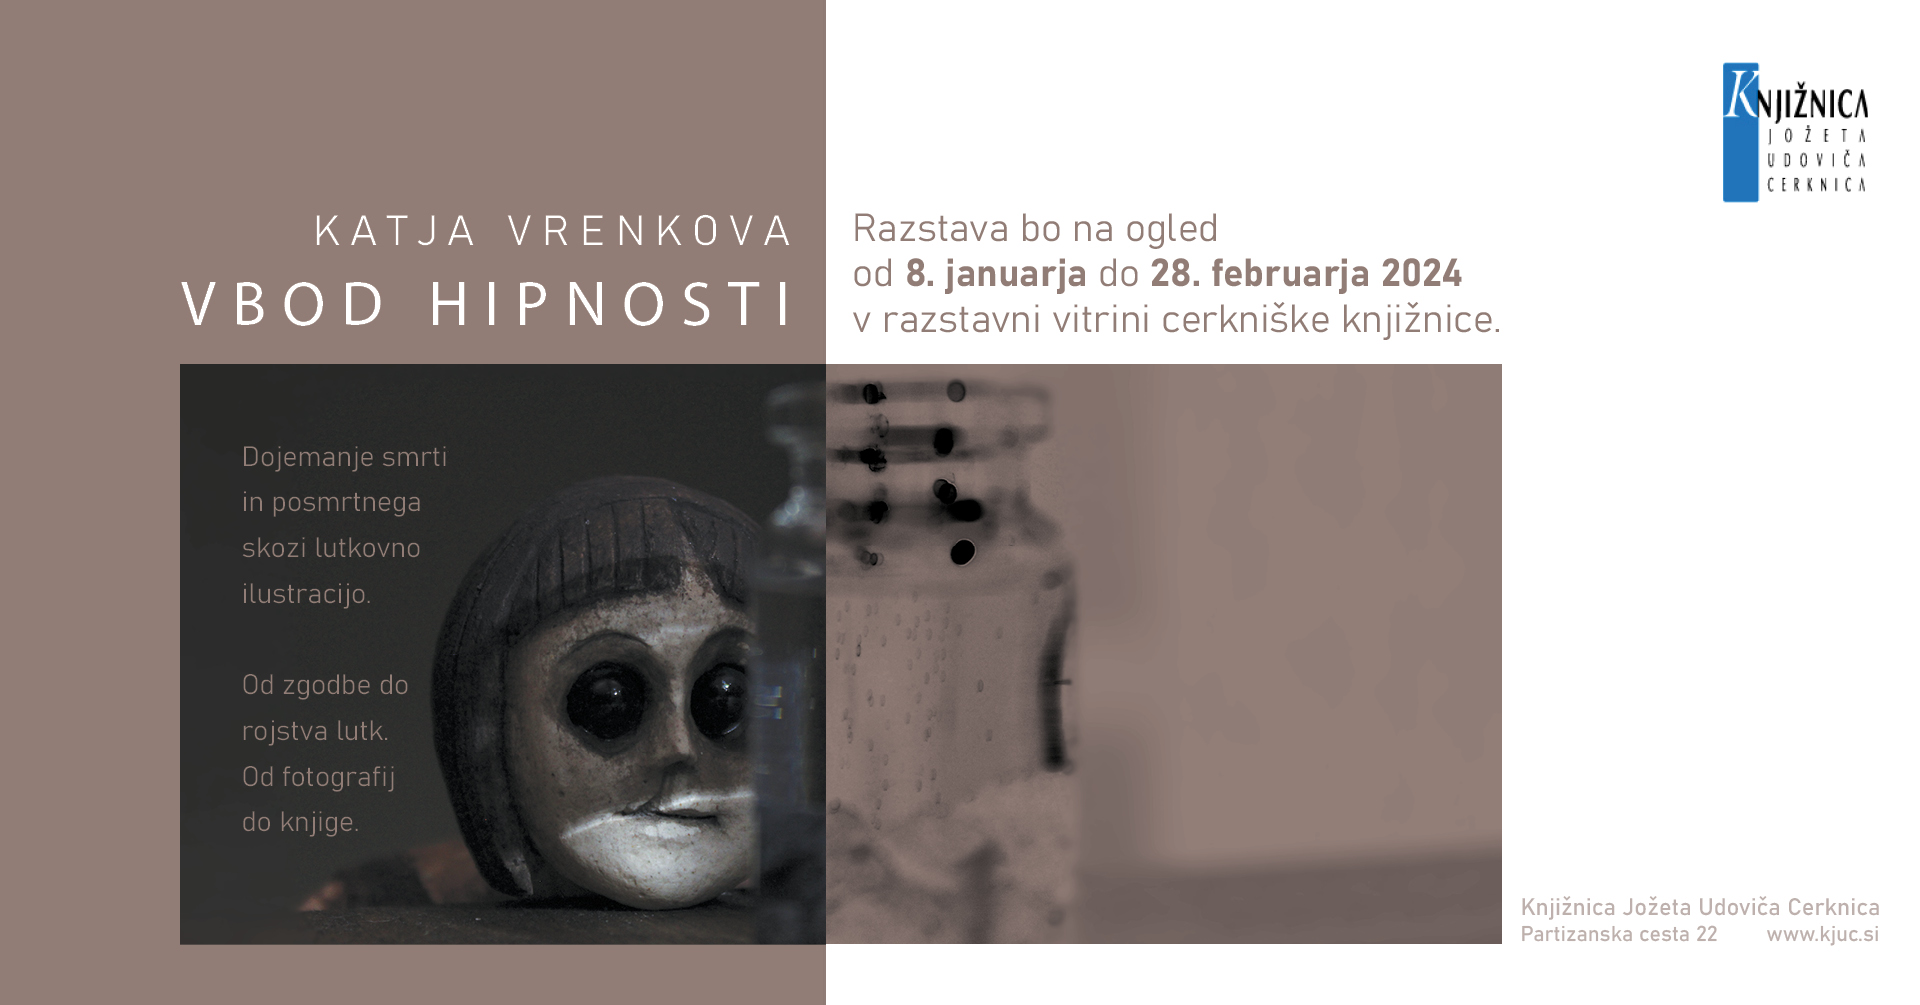 fb event Rakek - Katja Vrenkova: Vbod hipnosti – razstava lutkovnih ilustracij iz avtorske knjige Vbod hipnosti